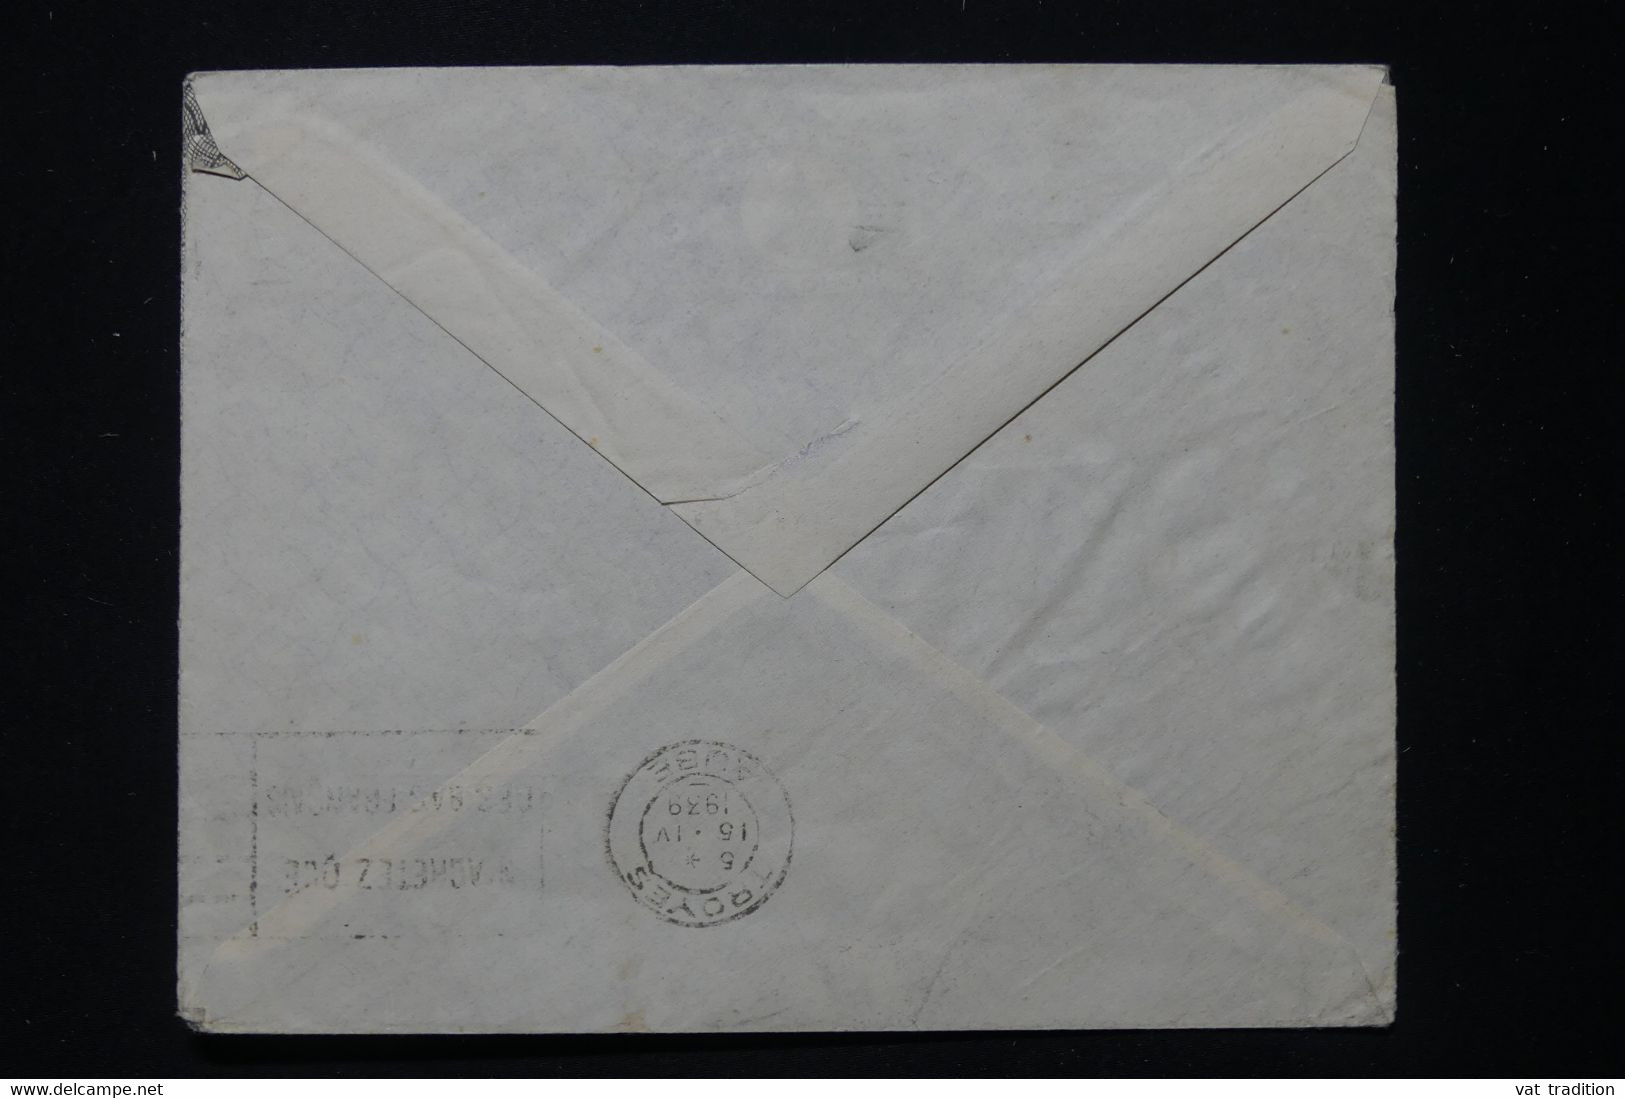 EGYPTE - Enveloppe Commerciale Du Caire En 1939 Pour La France - L 90709 - Briefe U. Dokumente